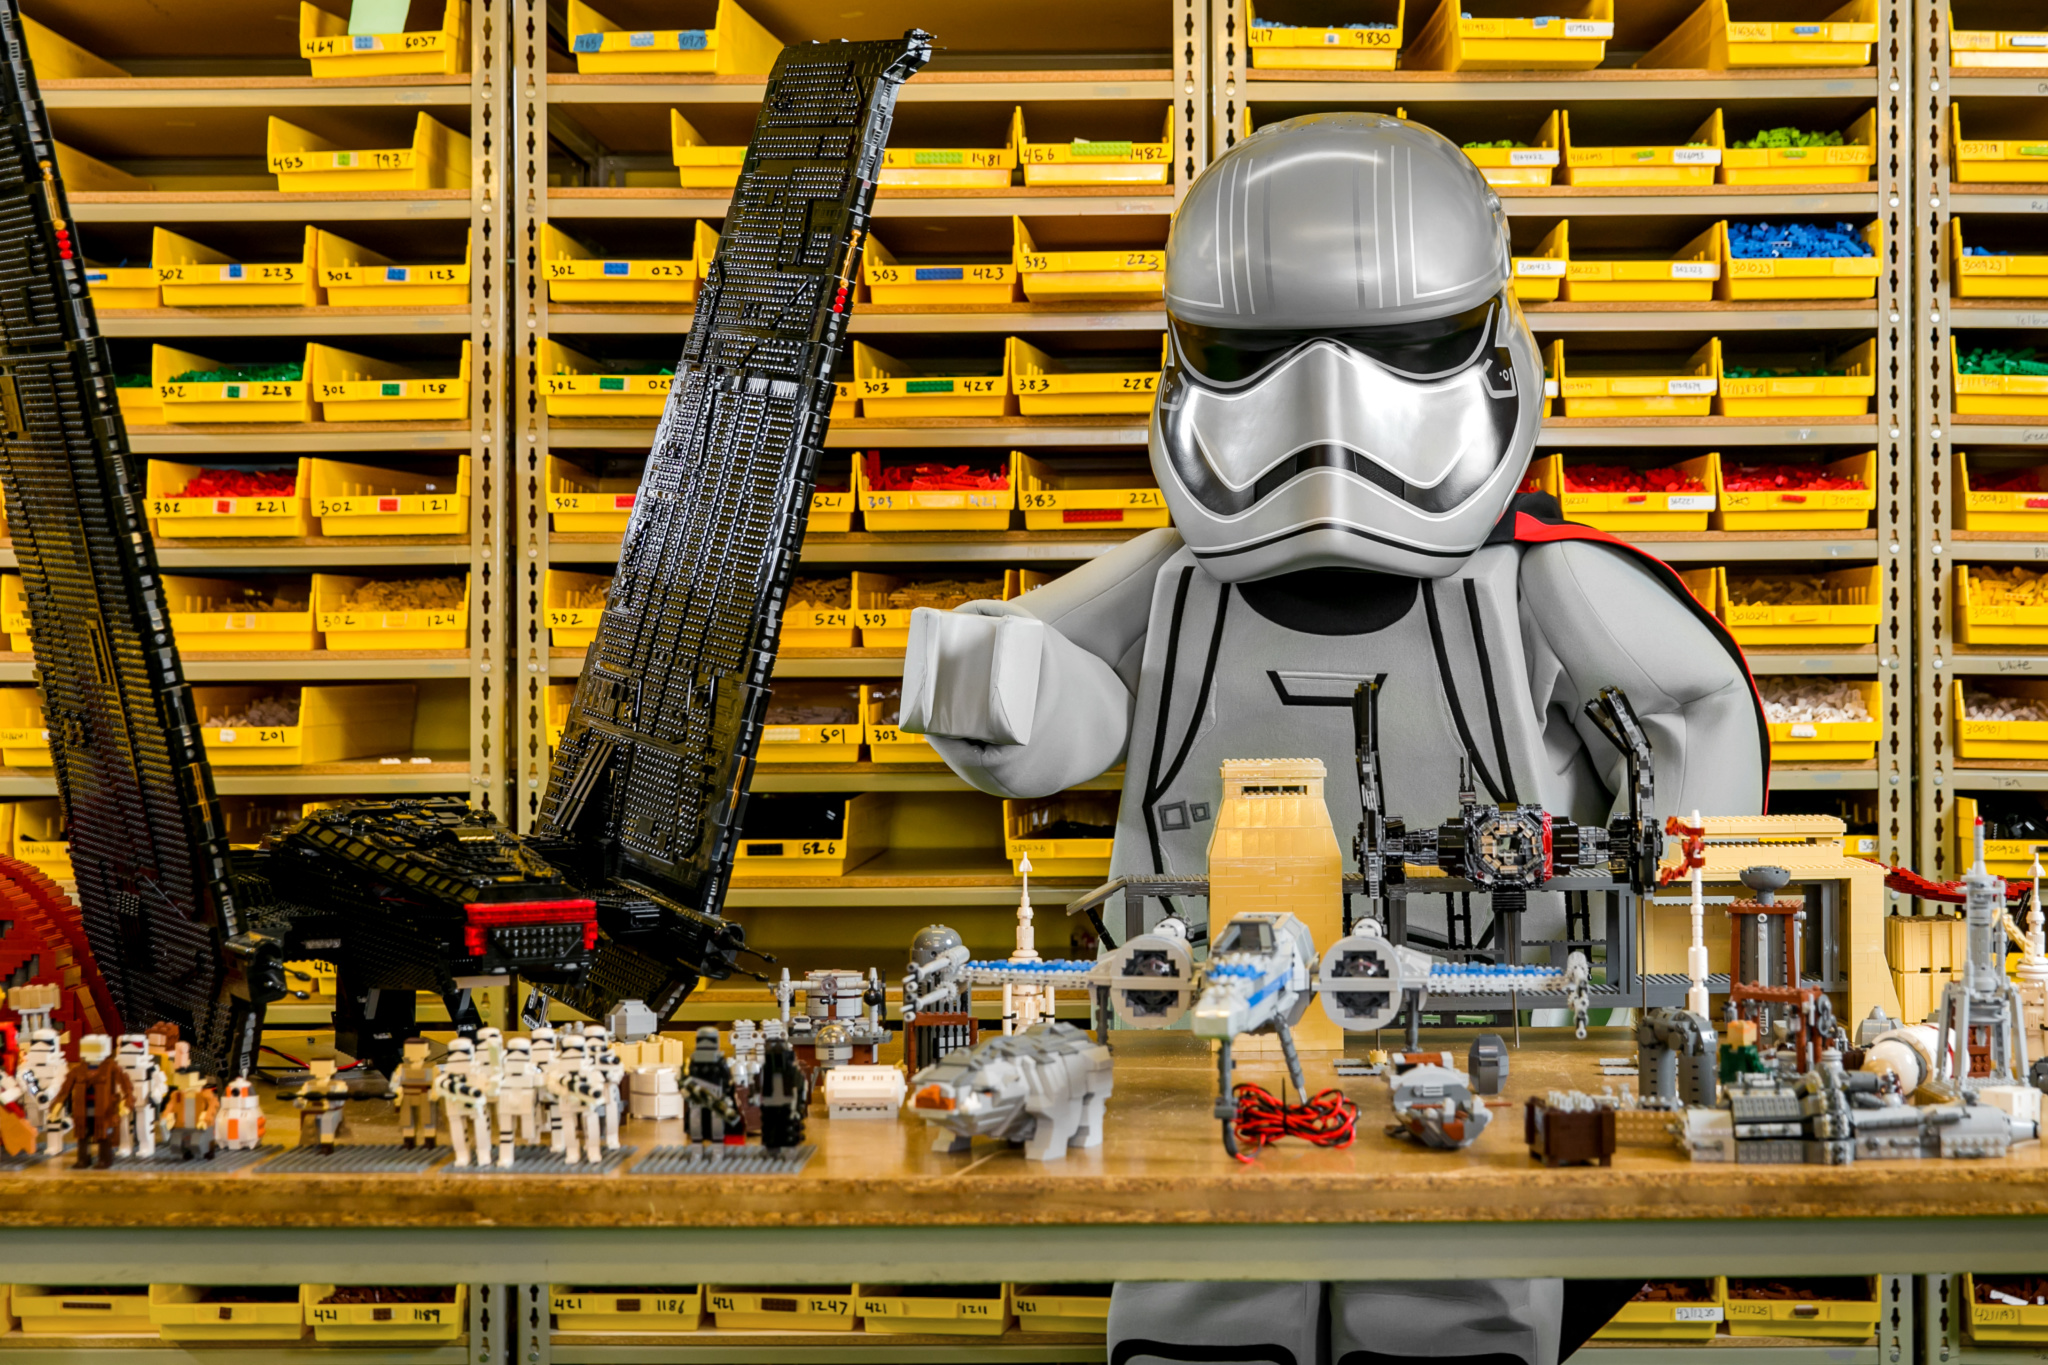 Lego Star Wars Days at Legoland